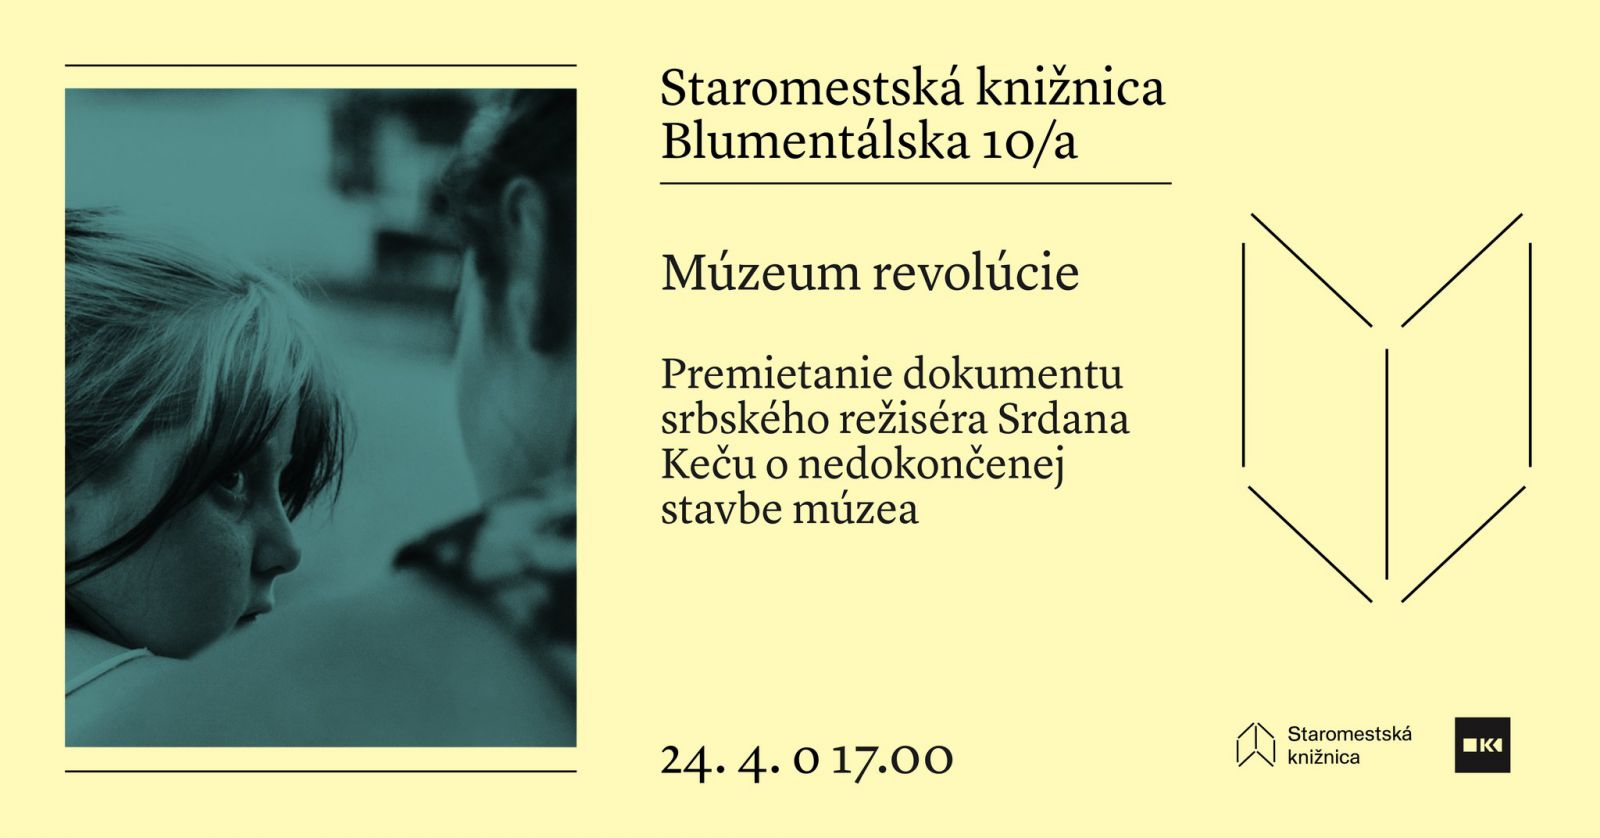 Múzeum revolúcie - premietanie dokumentu - 24. 4. o 17.00 na Blumentálskej 10/a